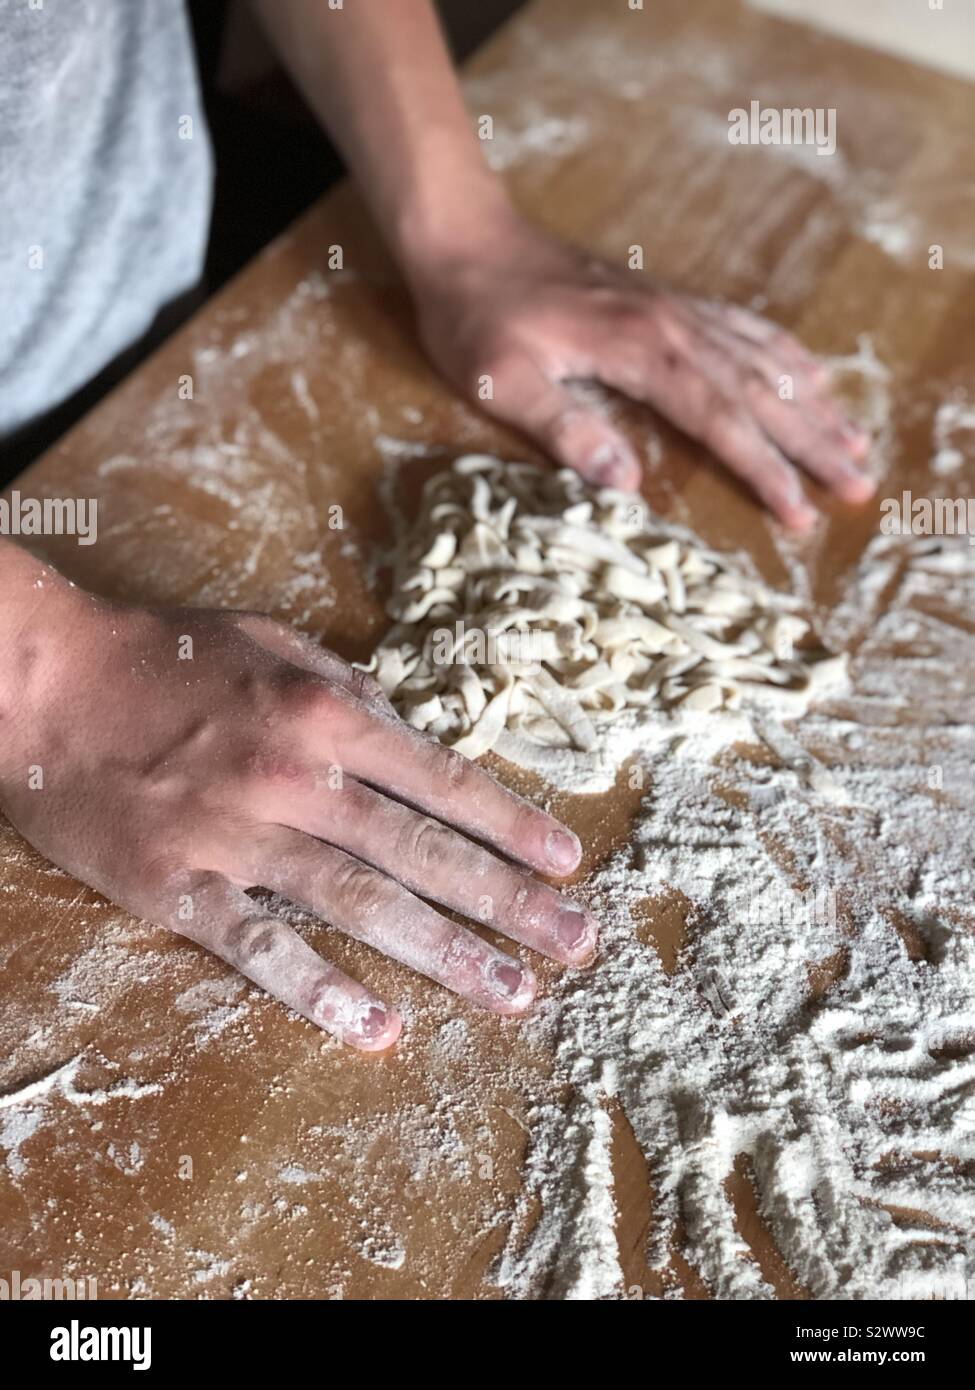 Making homemade pasta Stock Photo